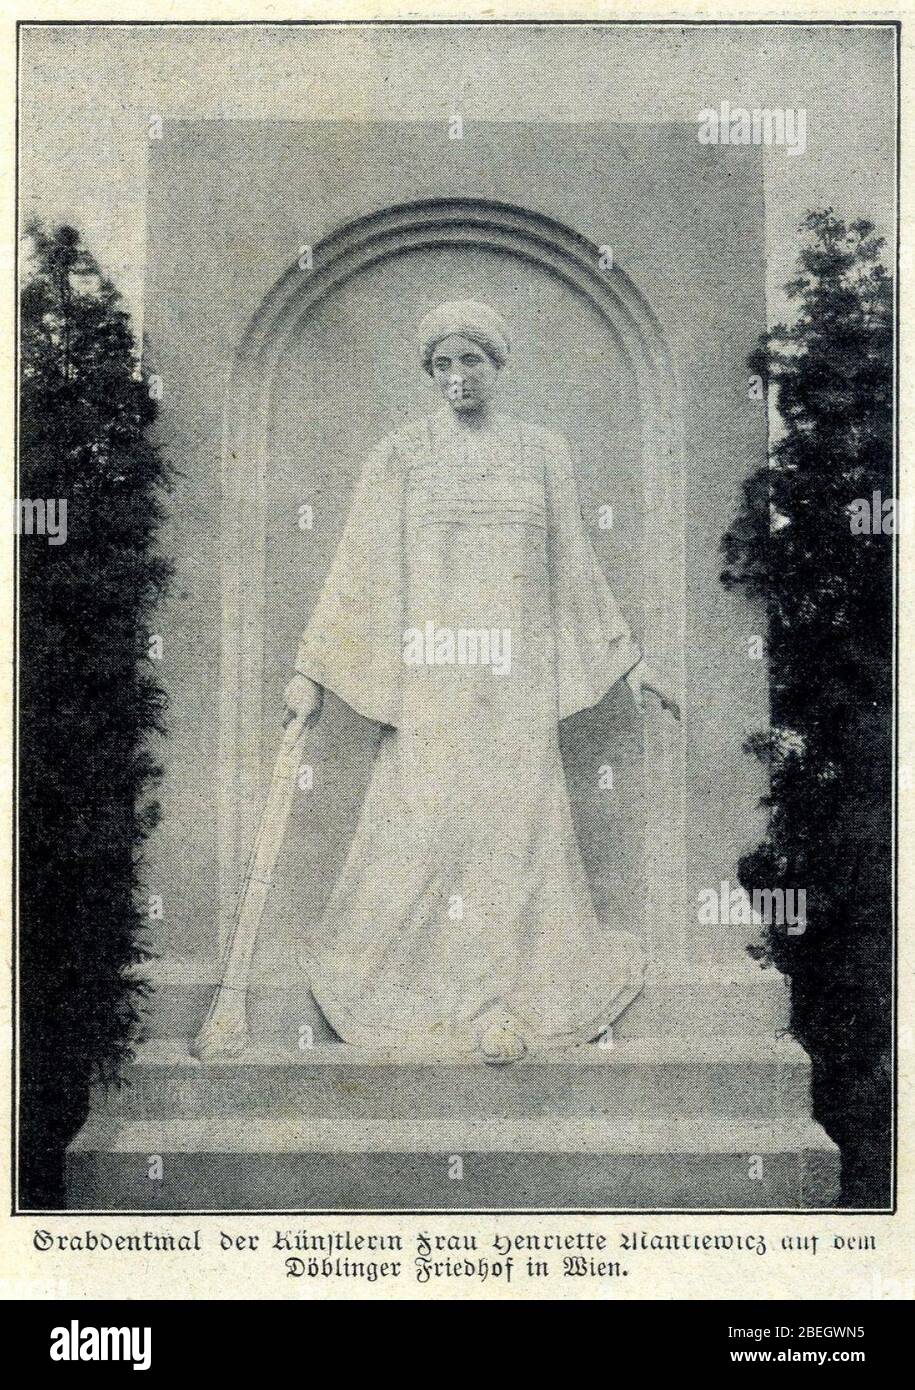 Henriette Mankiewicz - Döblinger Friedhof, 1908. Stock Photo